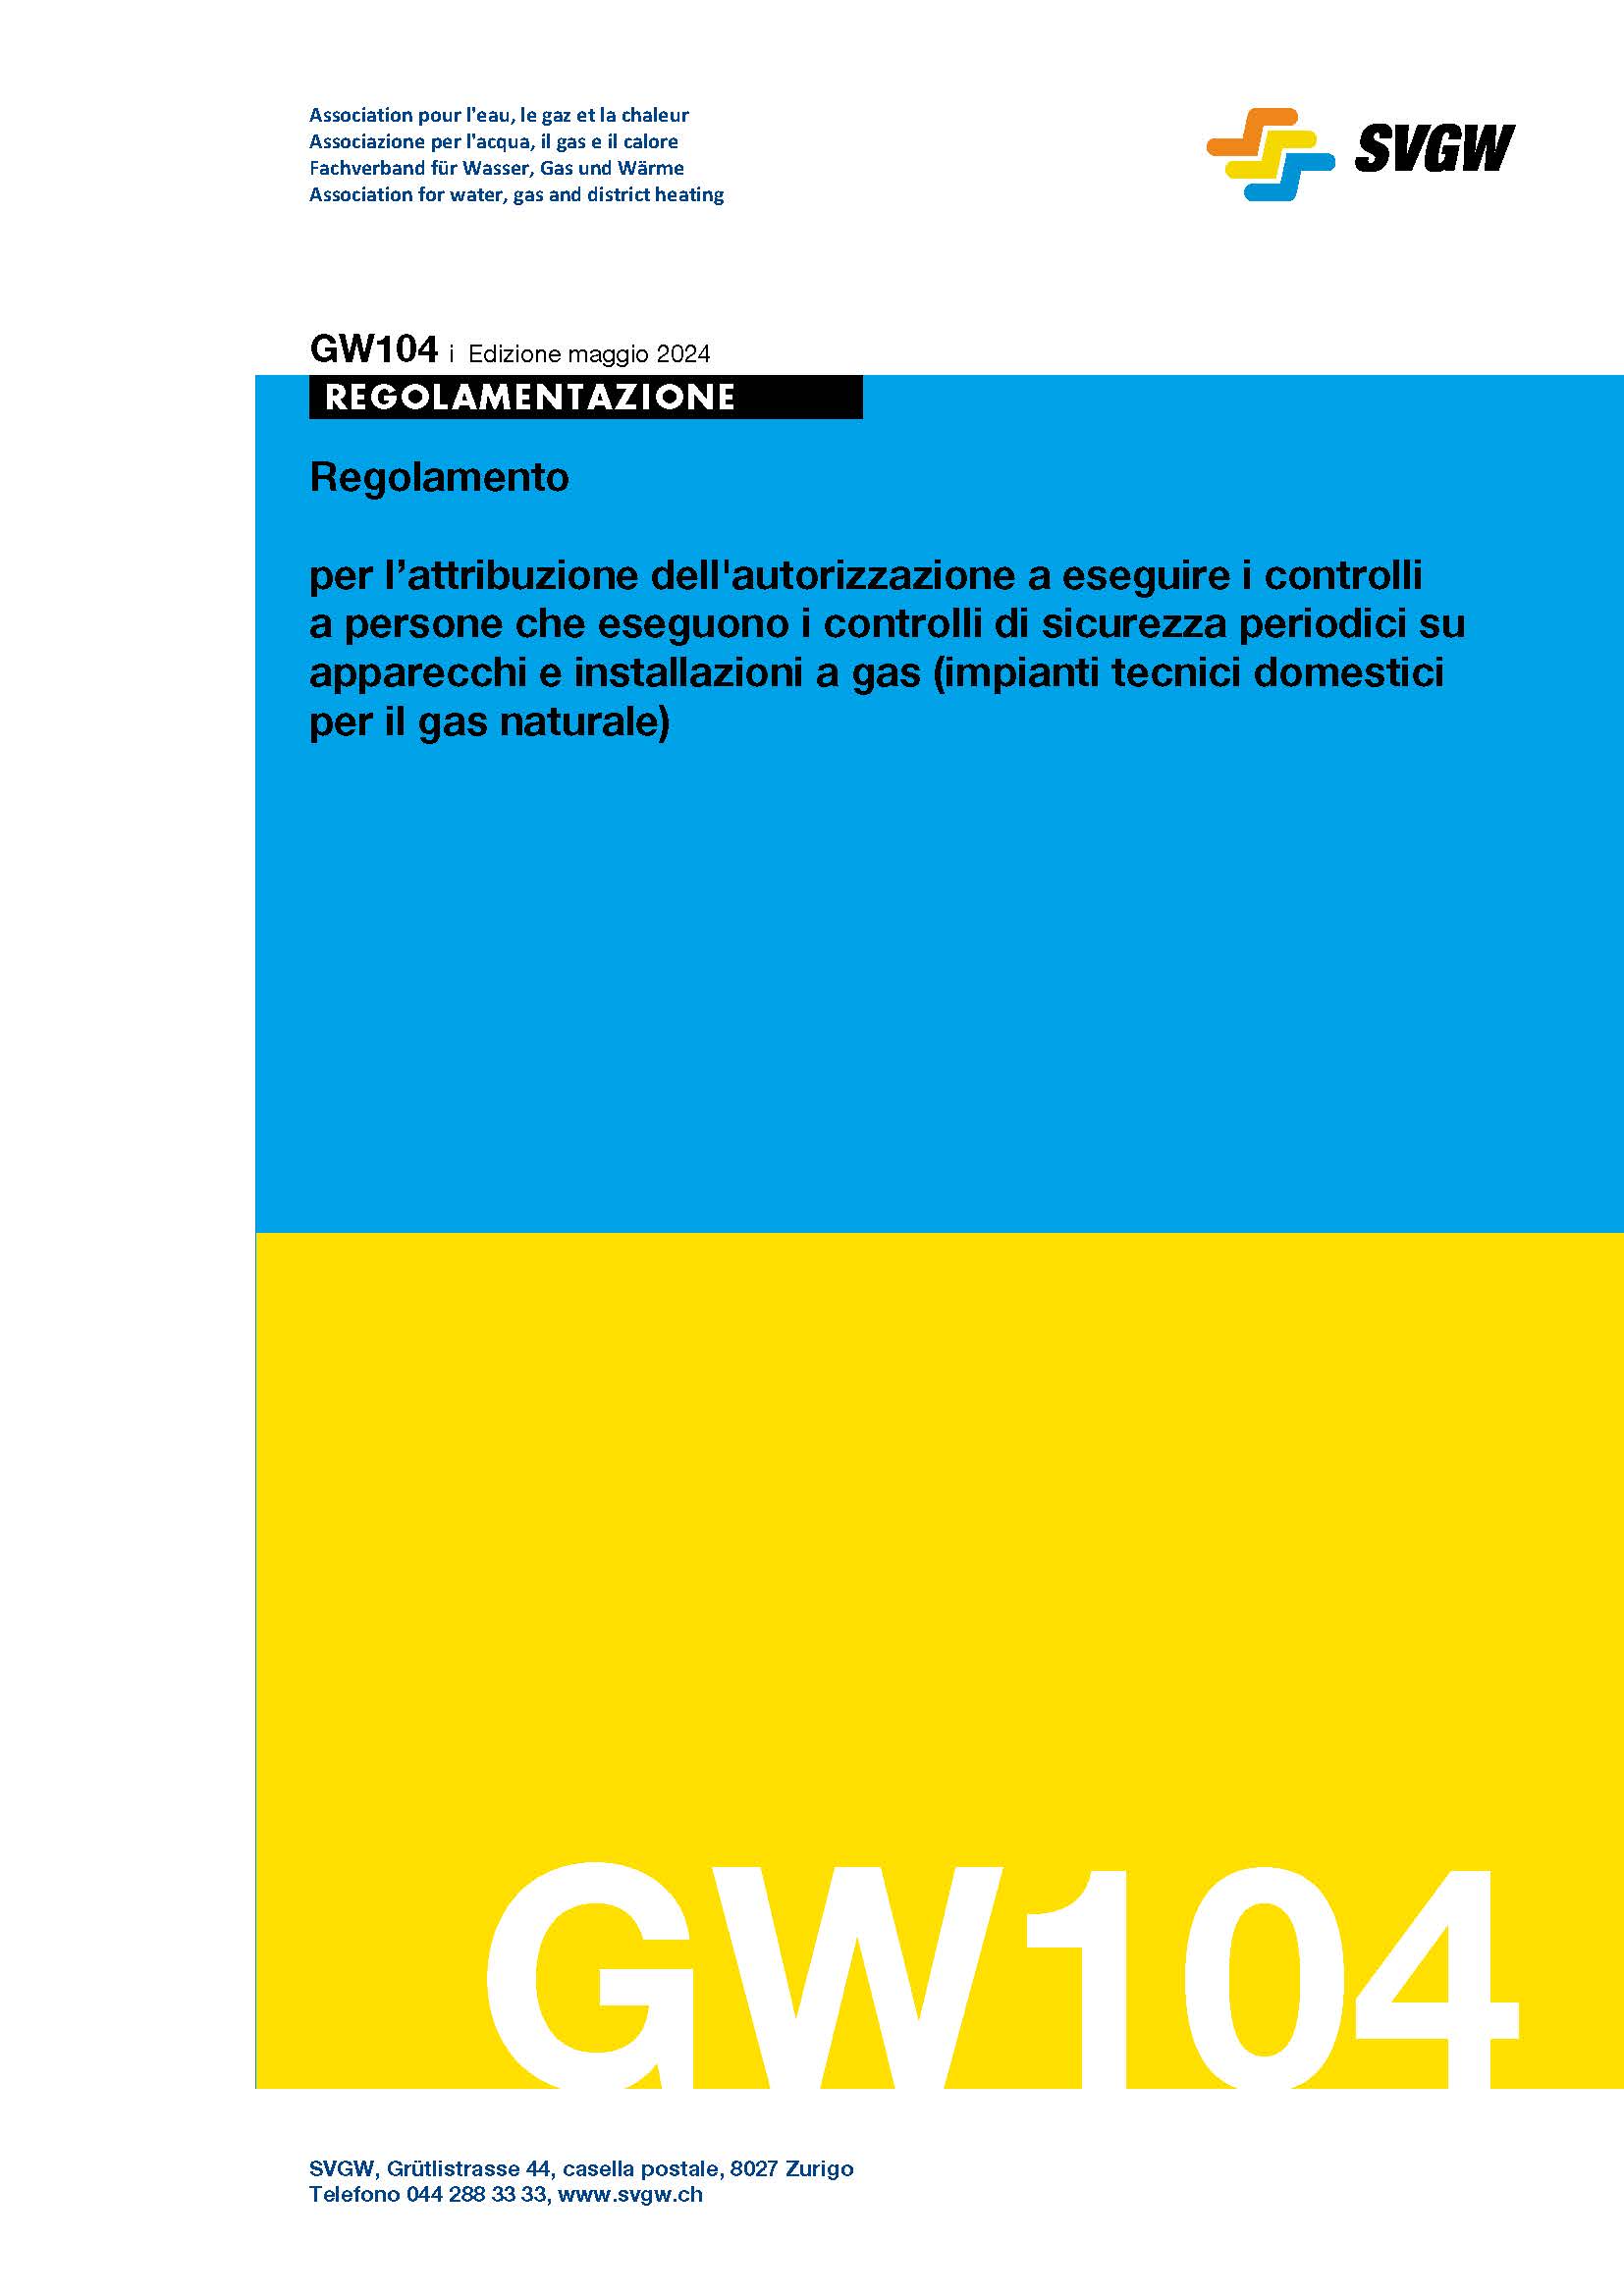 GW104 i Regolamento per l’attribuzione dell'autorizzazione a eseguire i controlli a persone che eseguono i controlli di sicurezza periodici su apparecchi e installazioni a gas (impianti tecnici domestici per il gas naturale)